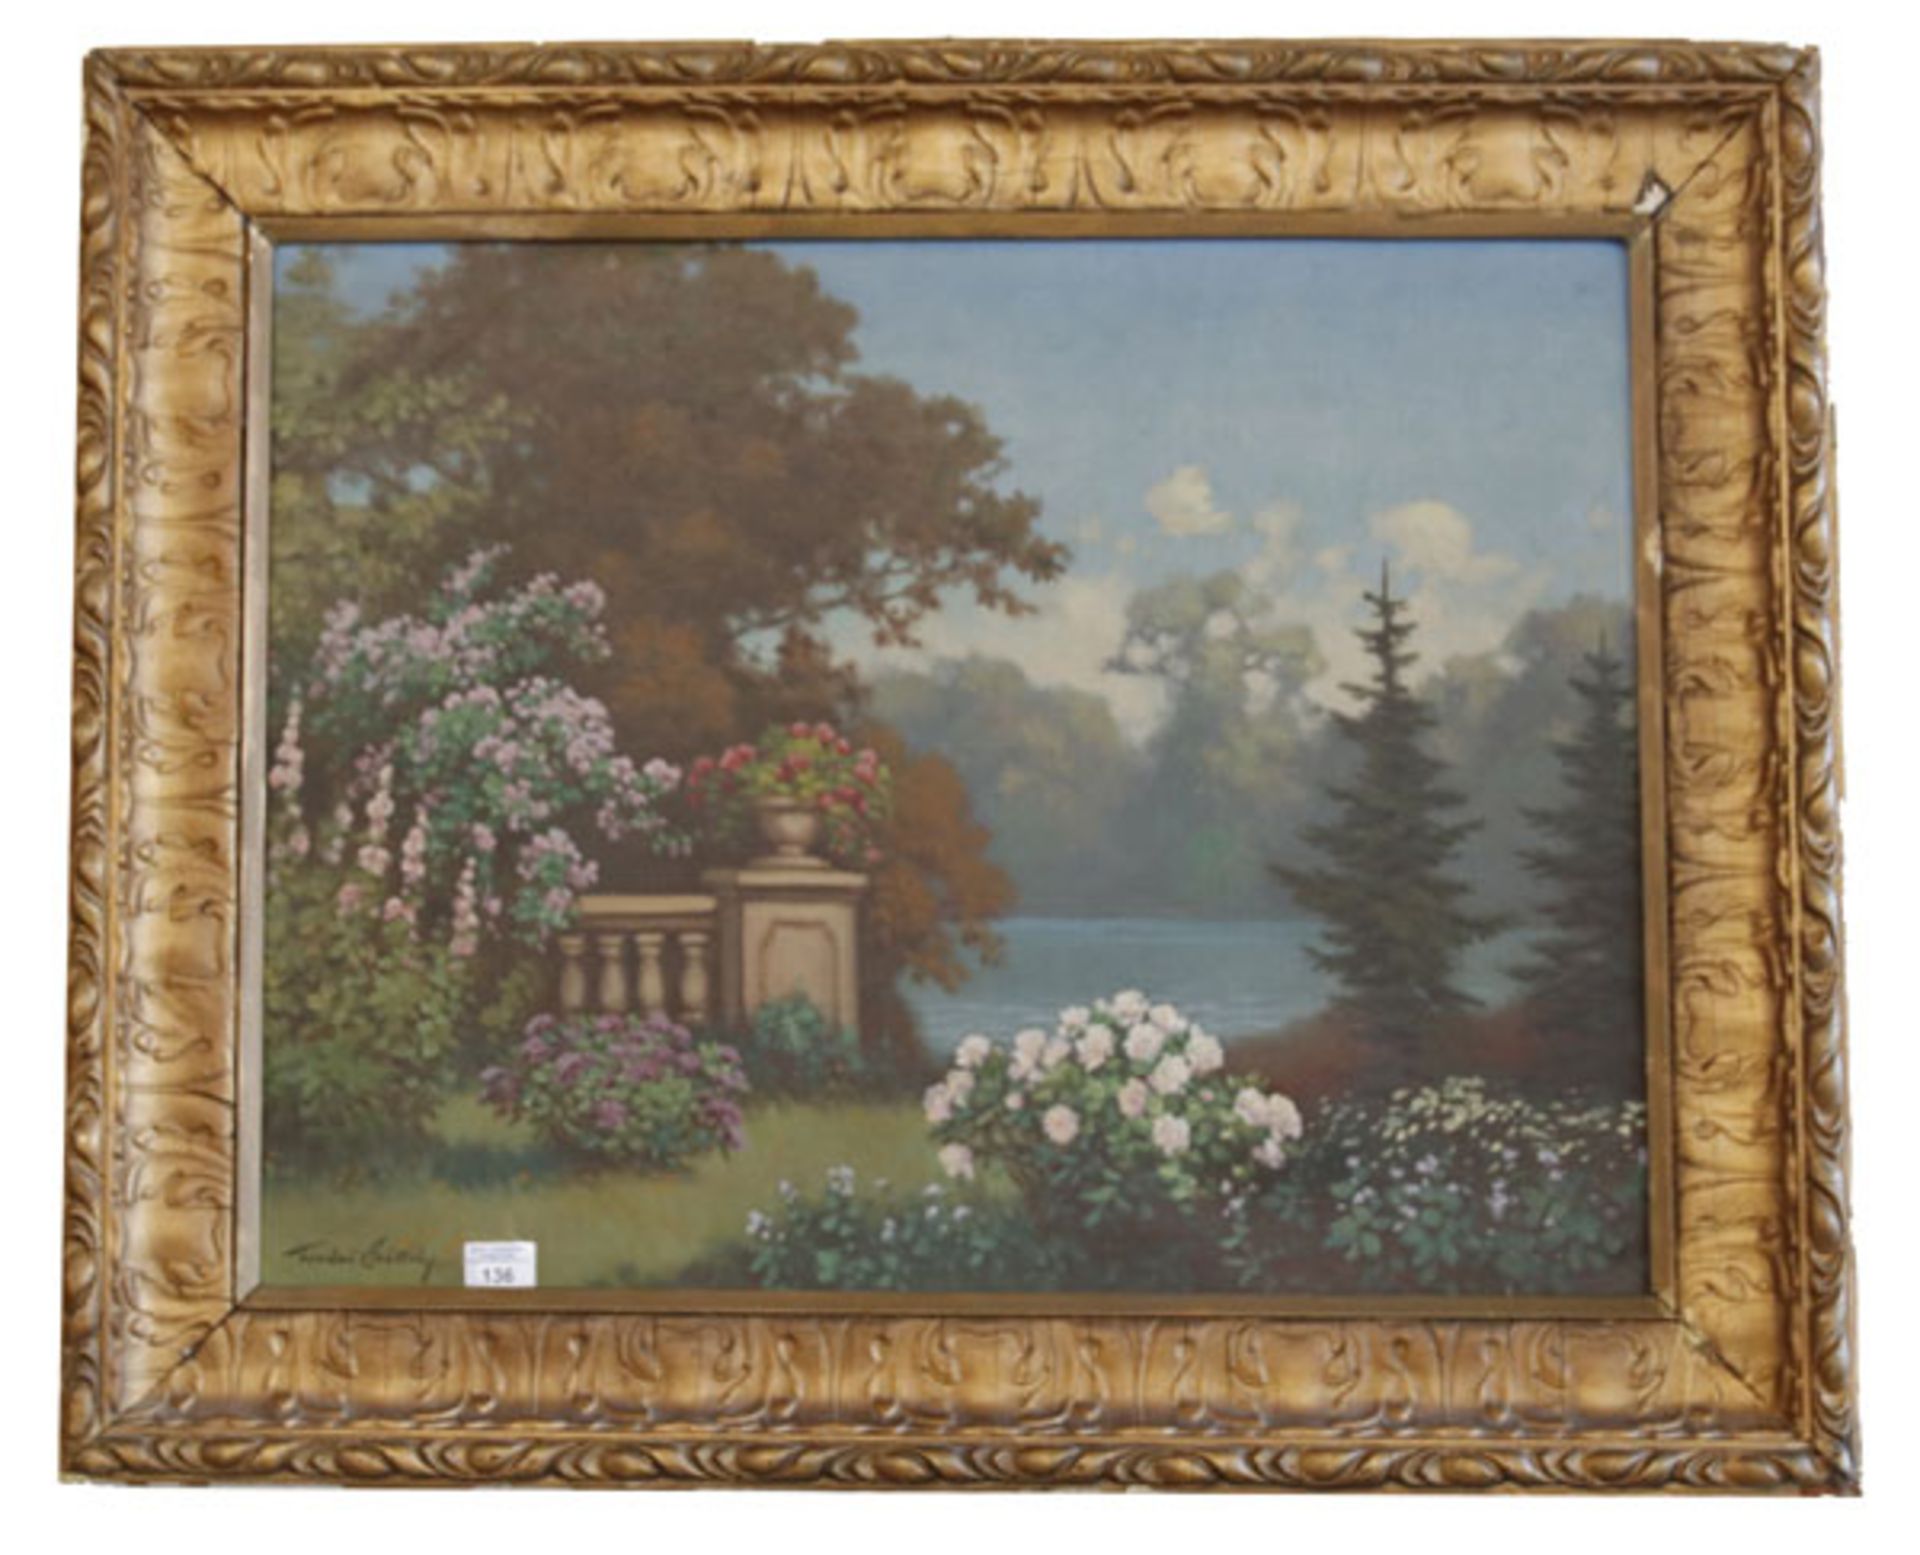 Gemälde ÖL/LW 'Park-Szenerie am See', signiert Tordao, Székely Mihály, * 1890 +1940, gerahmt, Rahmen